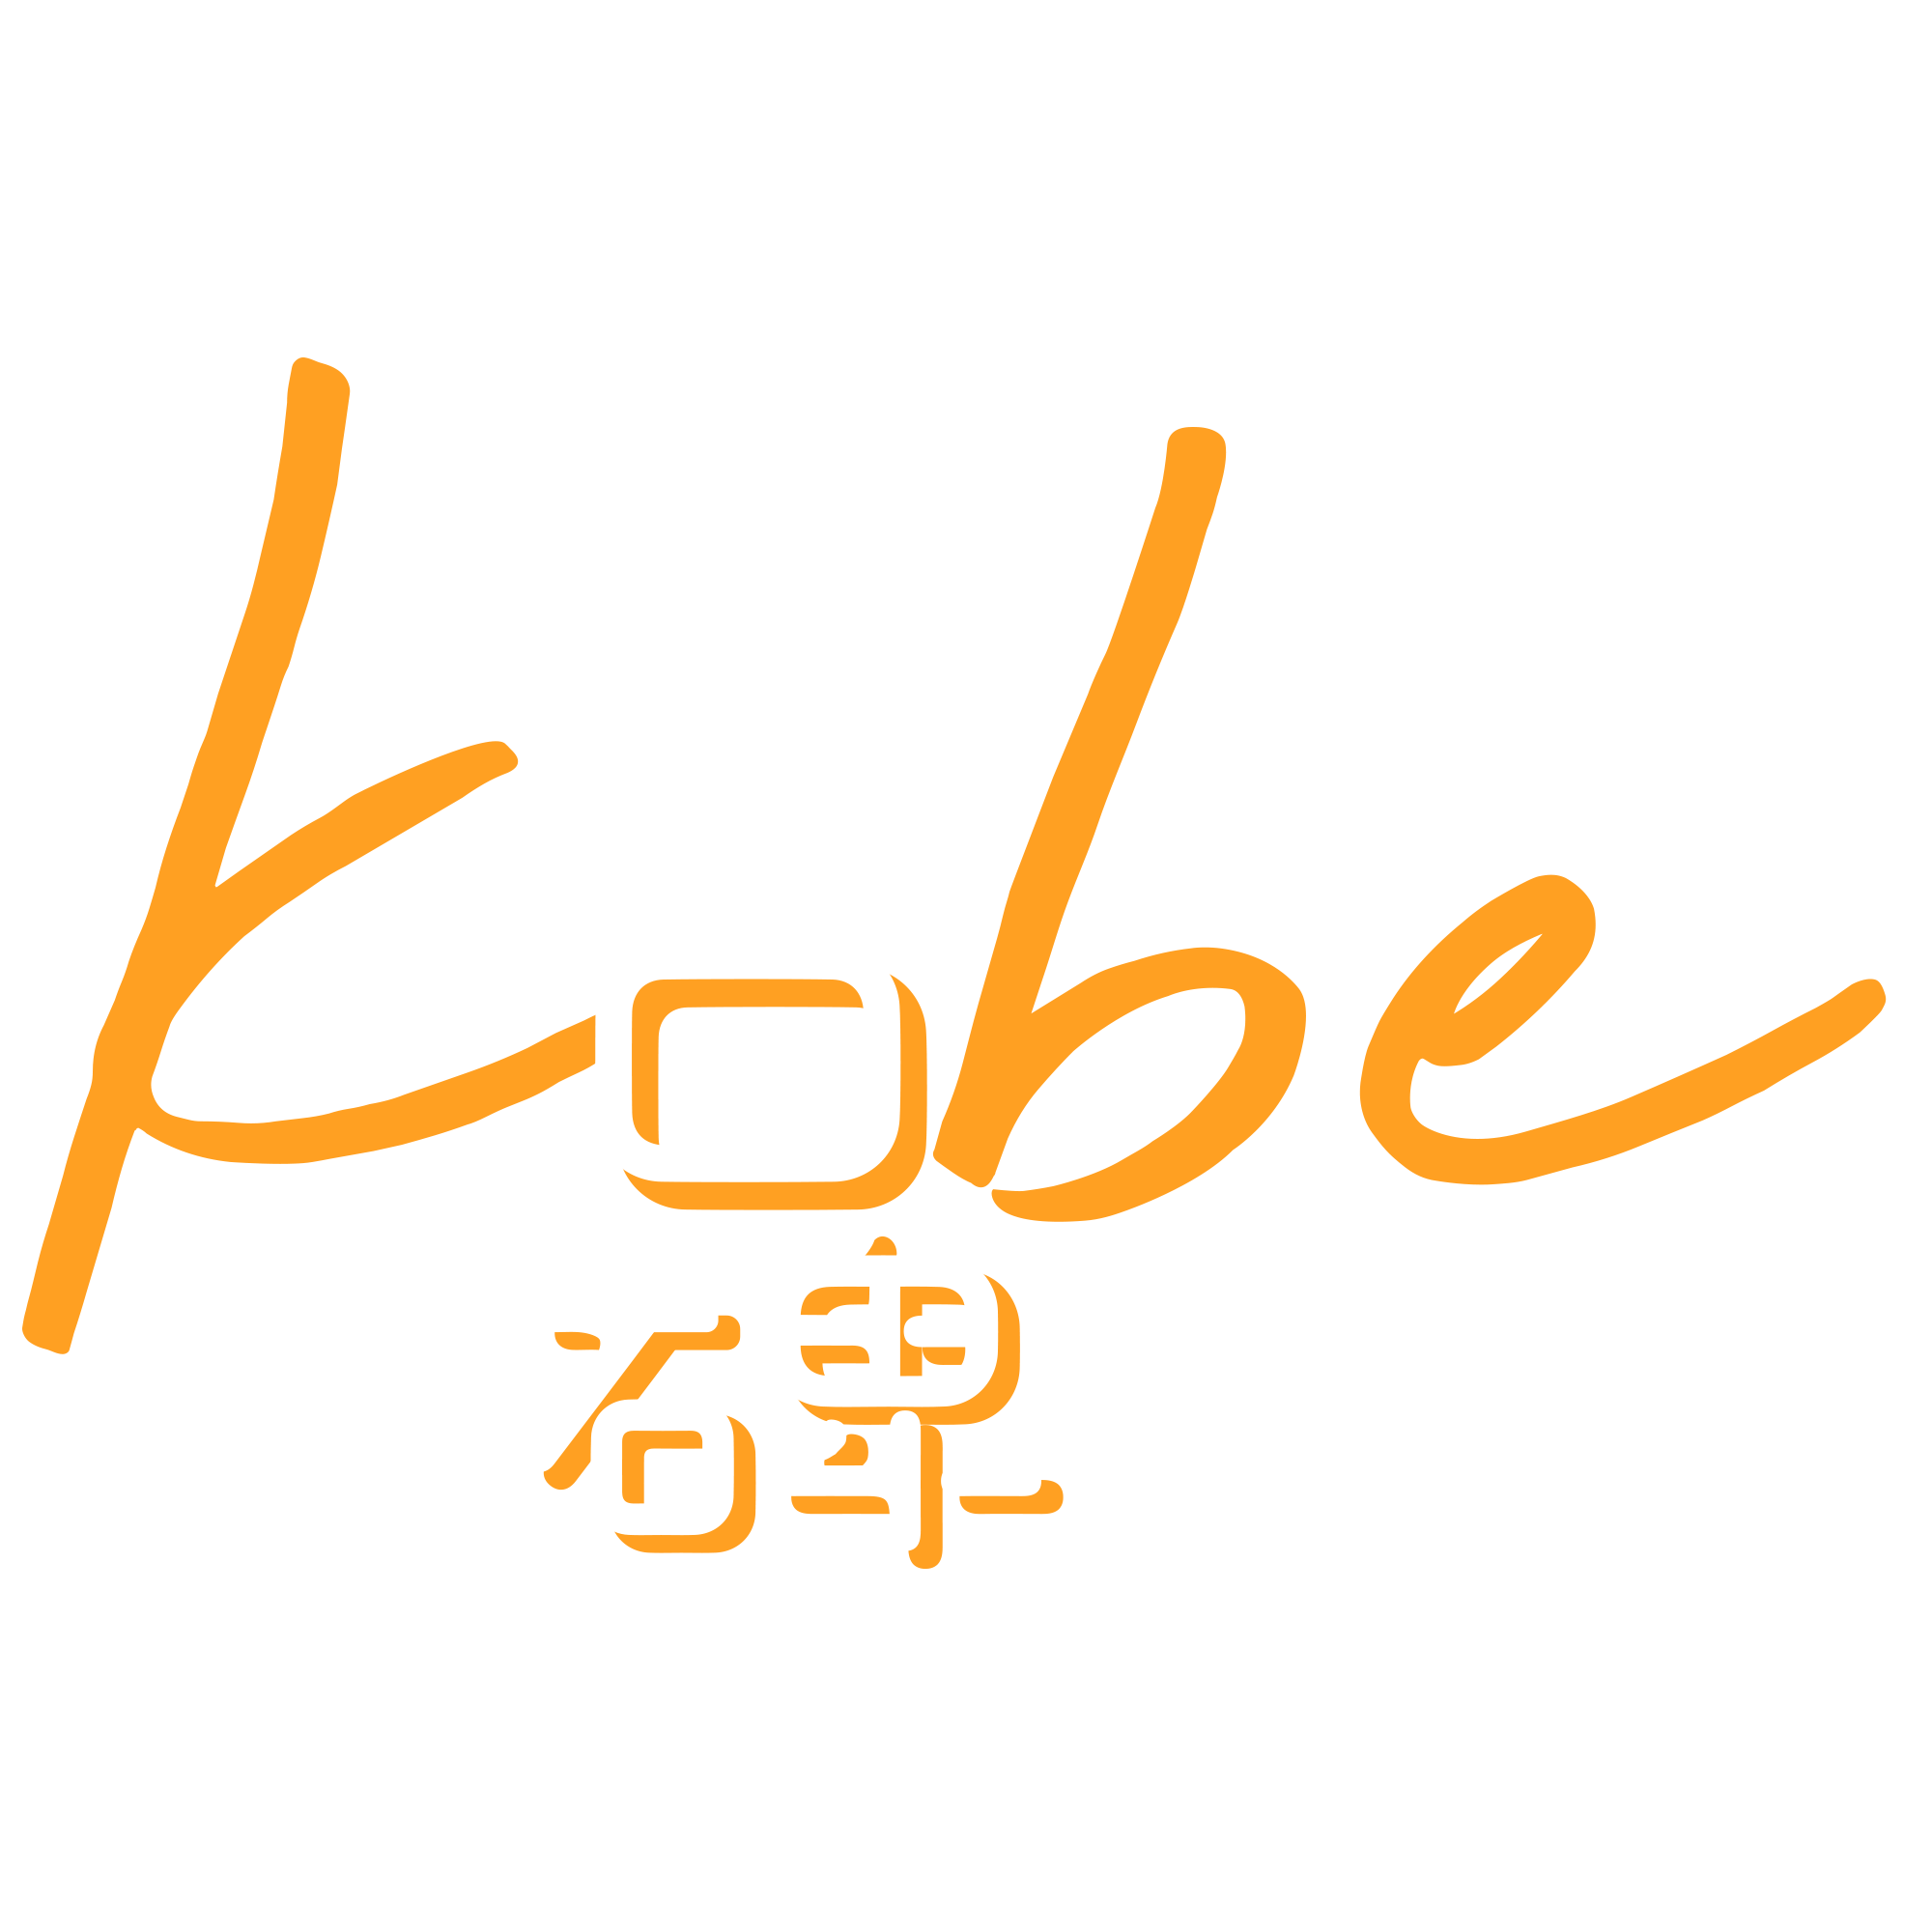 Kobe Global Technologies